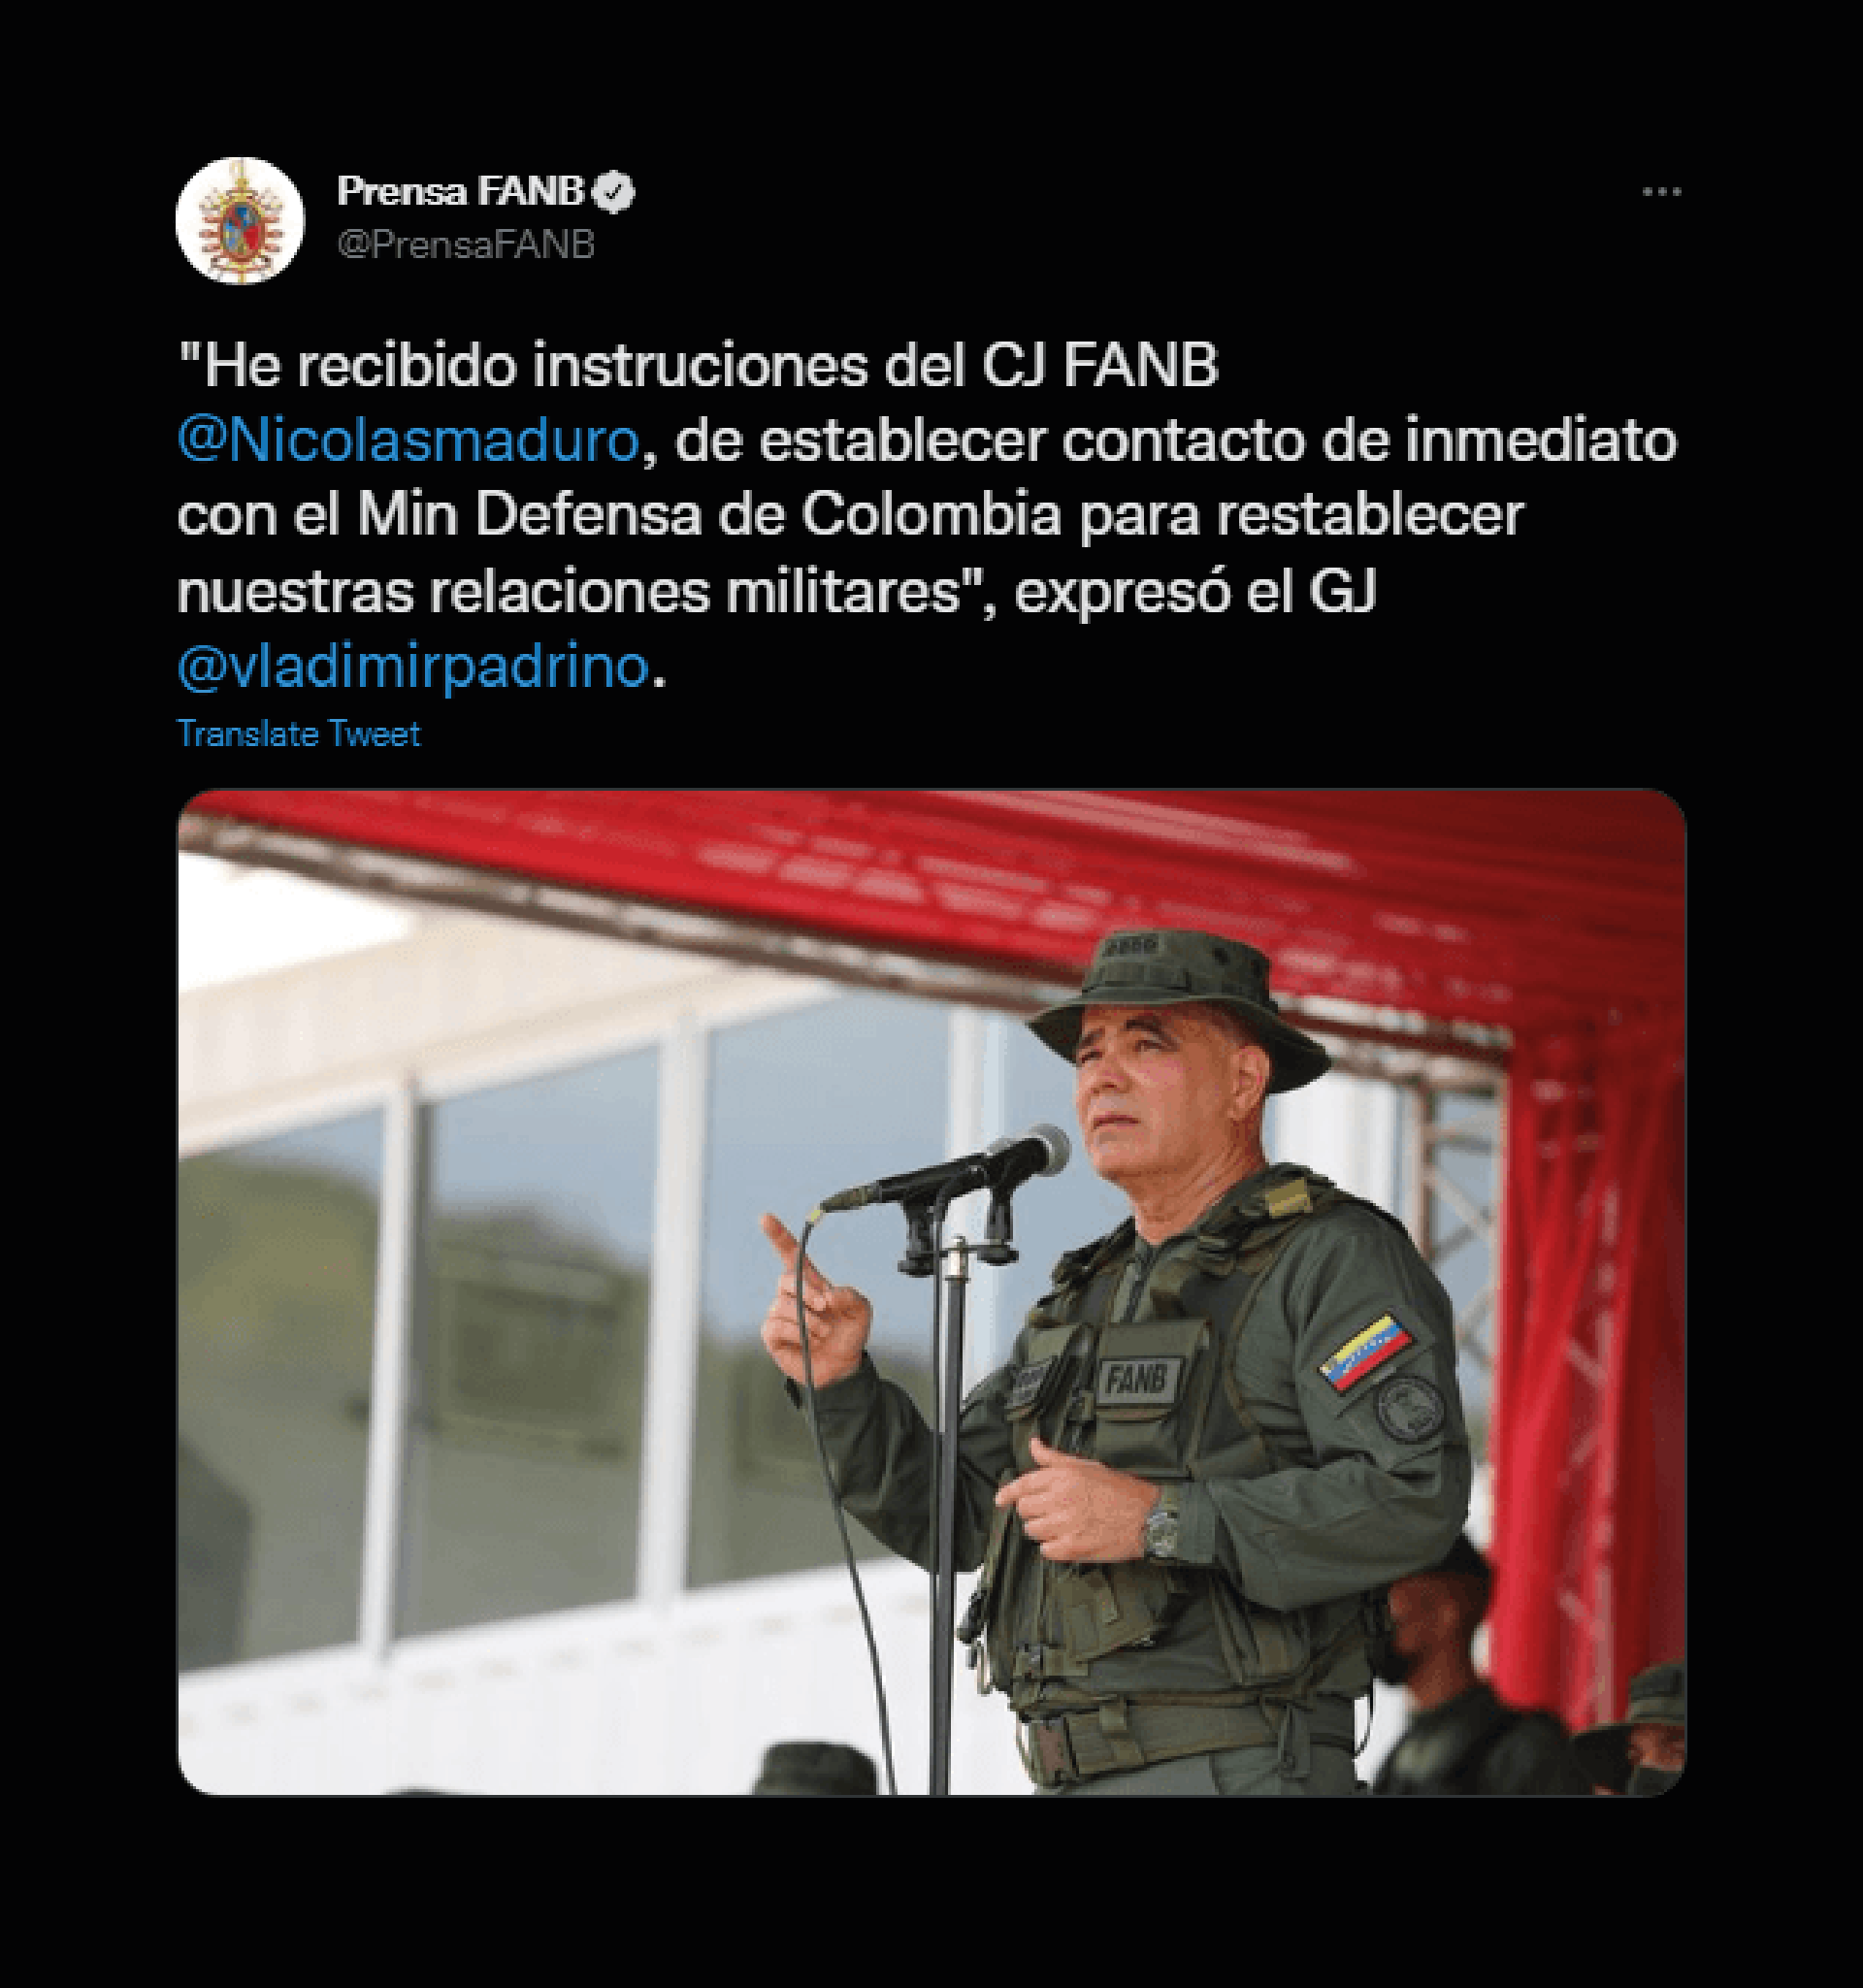 Tuit de la Fuerza Armada venezolana sobre el restablecimiento de las relaciones militares con Colombia. @PrensaFANB